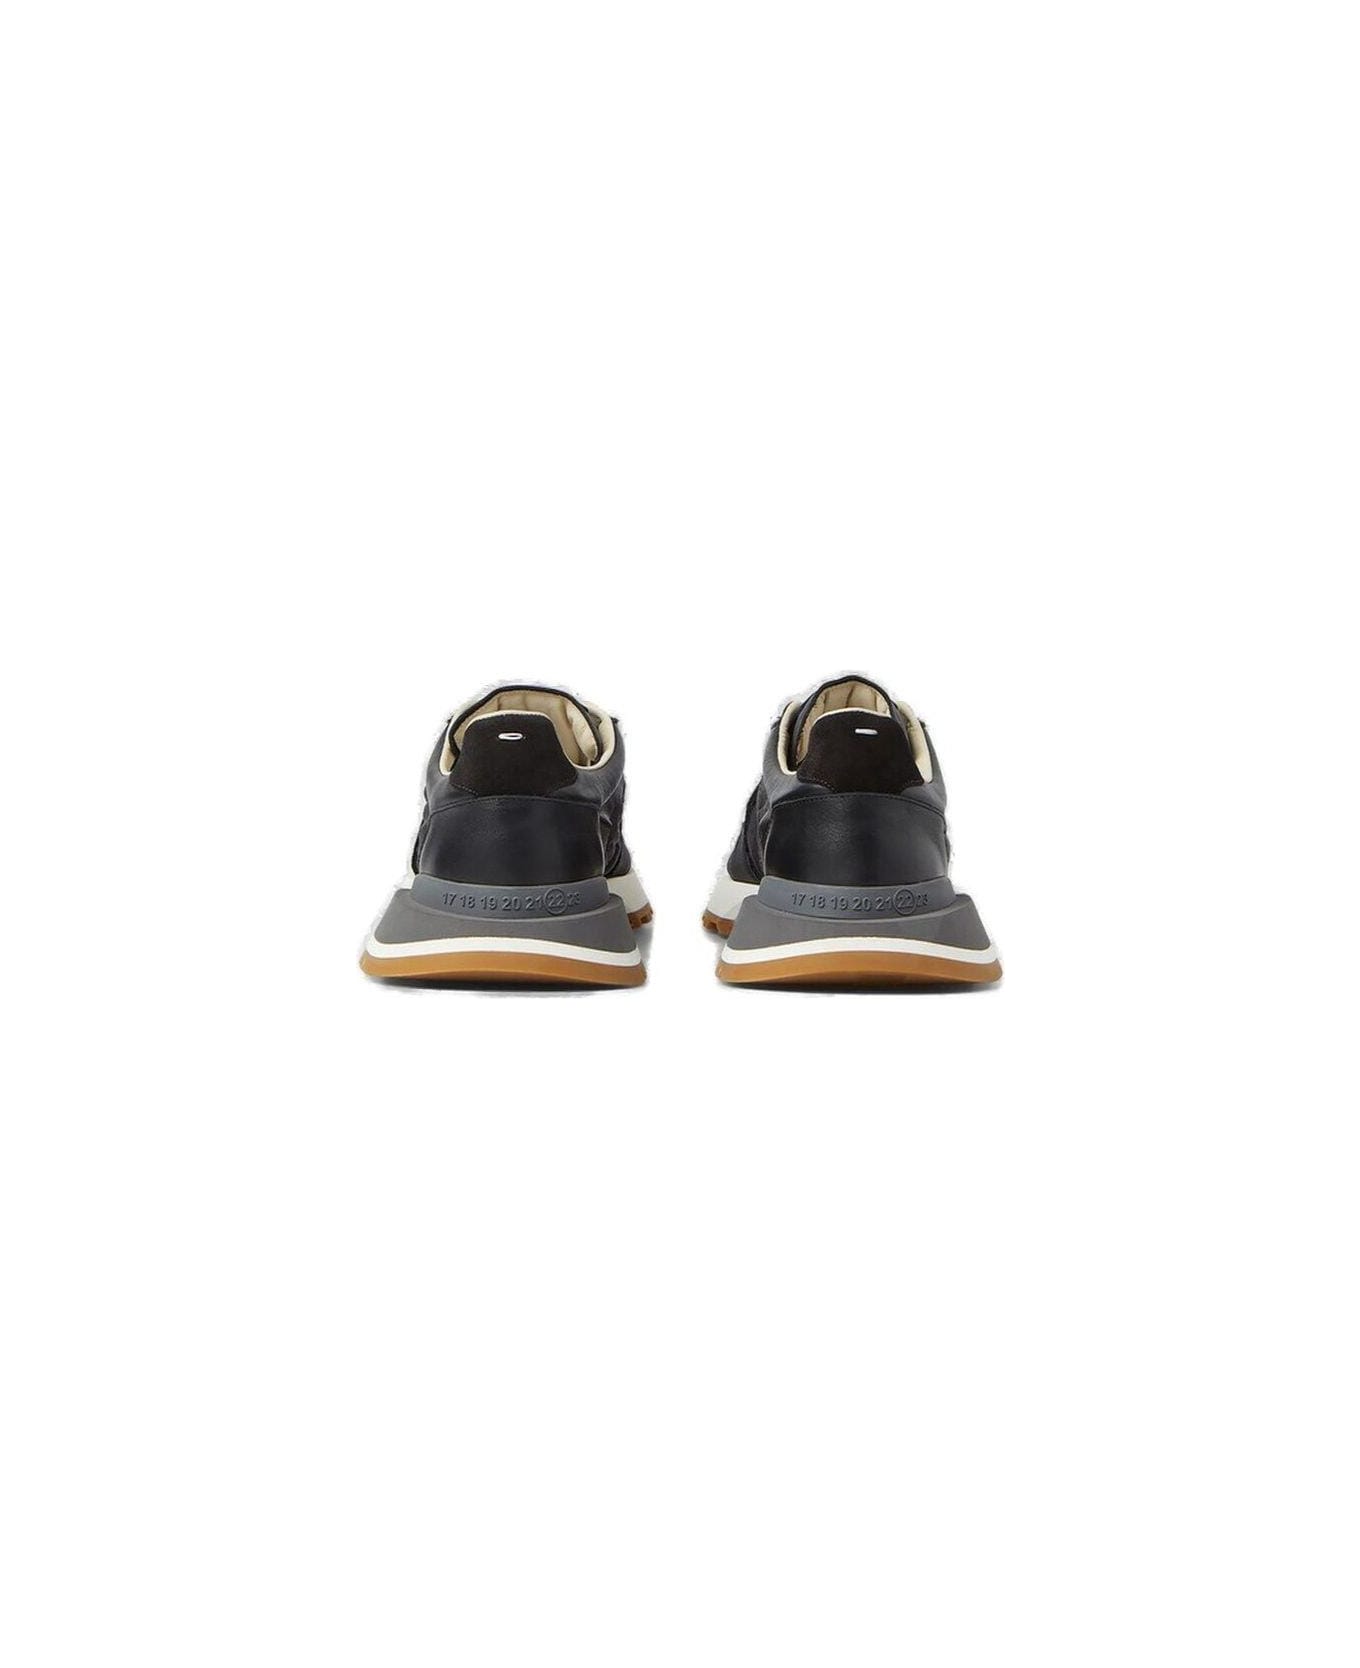 Maison Margiela "50-50" Sneakers - Black スニーカー